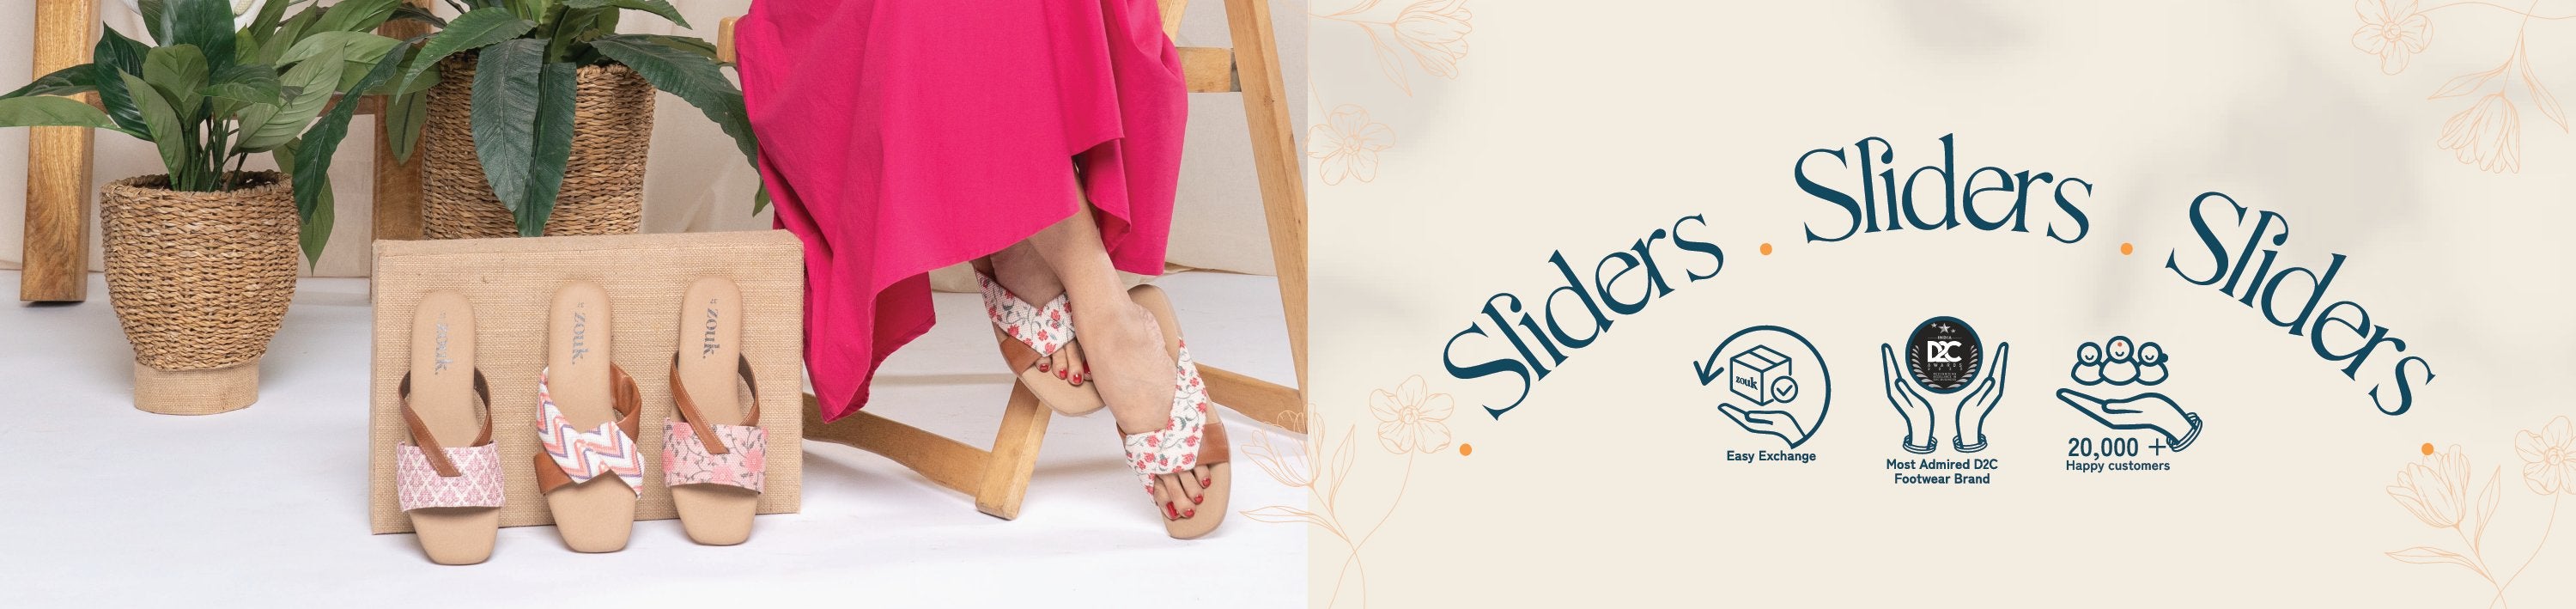 Sliders for Women: Buy Slipper Sliders, Slide Flip Flops for Women